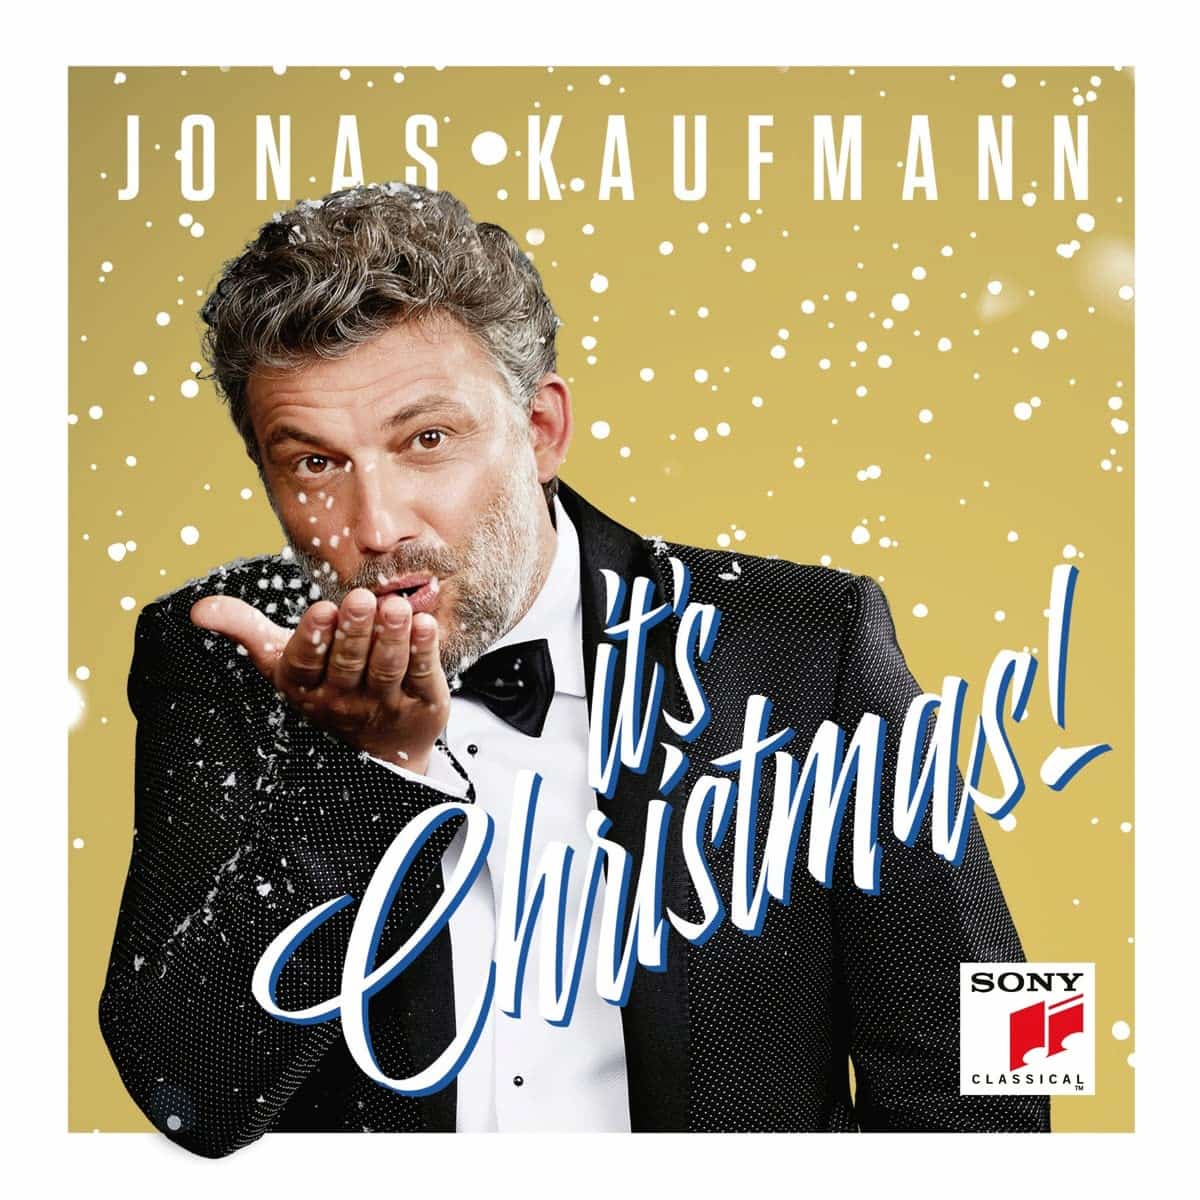 Jonas Kaufmann “It's Christmas” - Extended Gold Edition